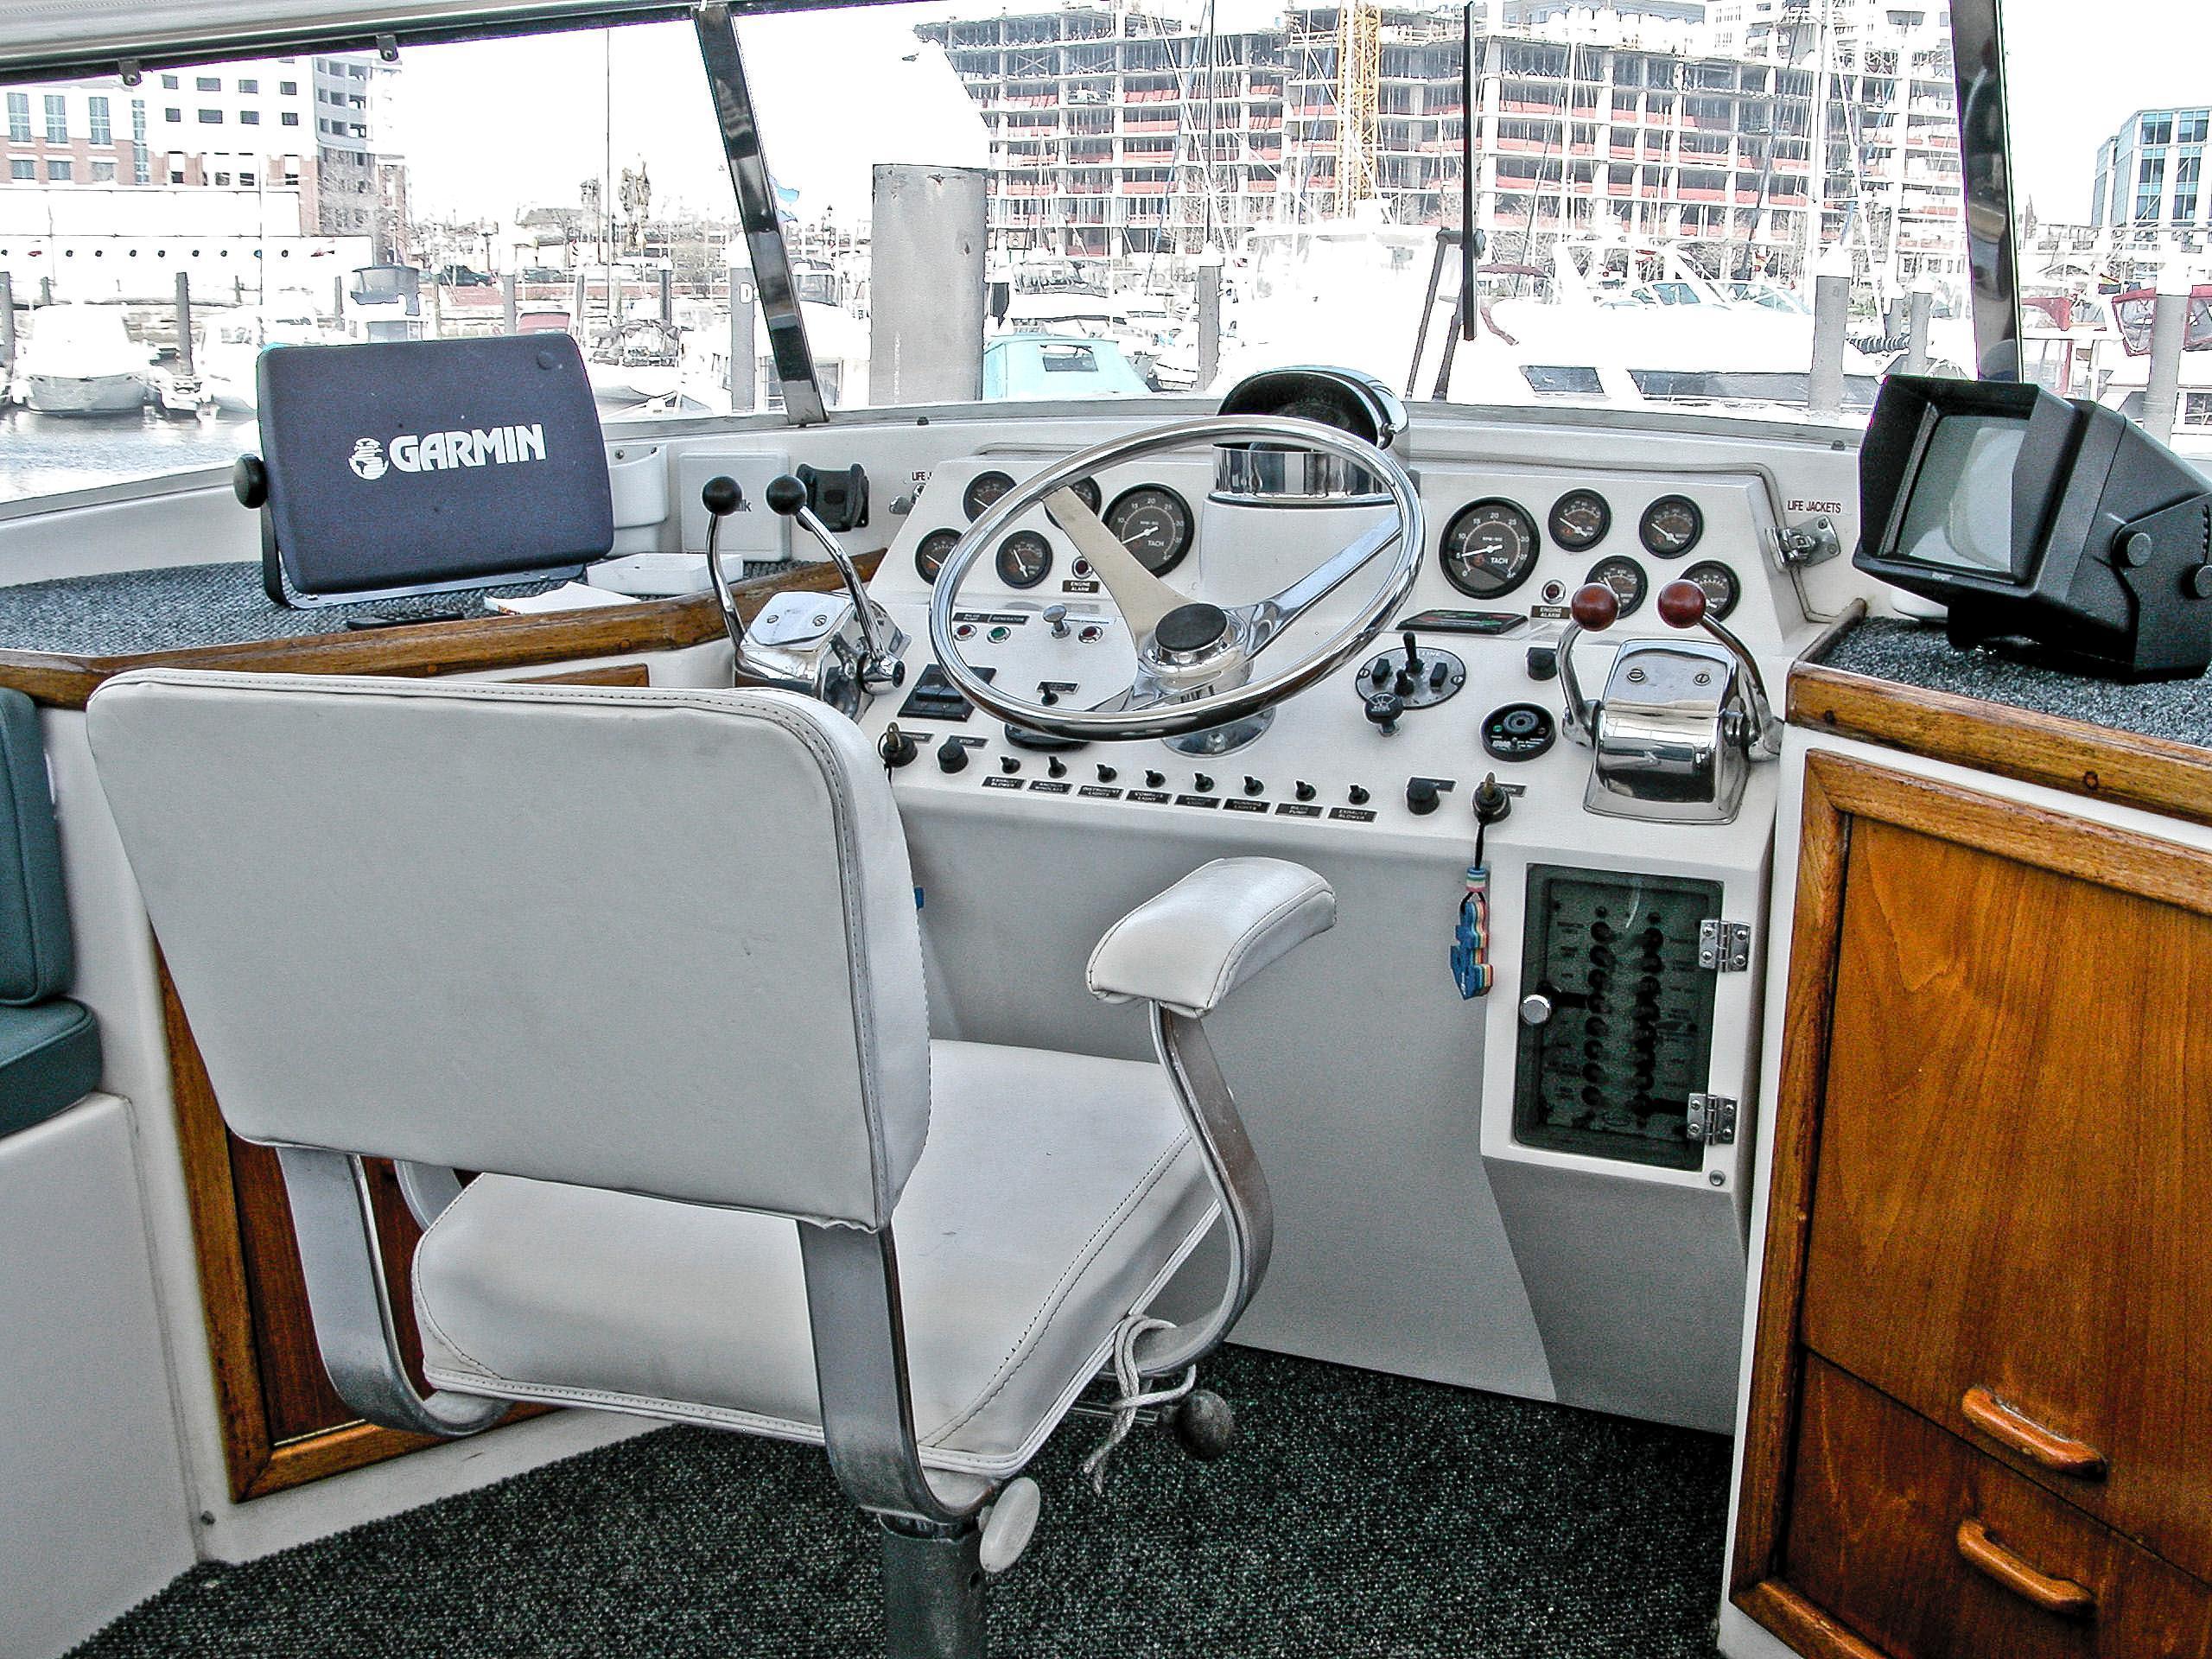 Gulfstar 49 Motor Yacht, Baltimore